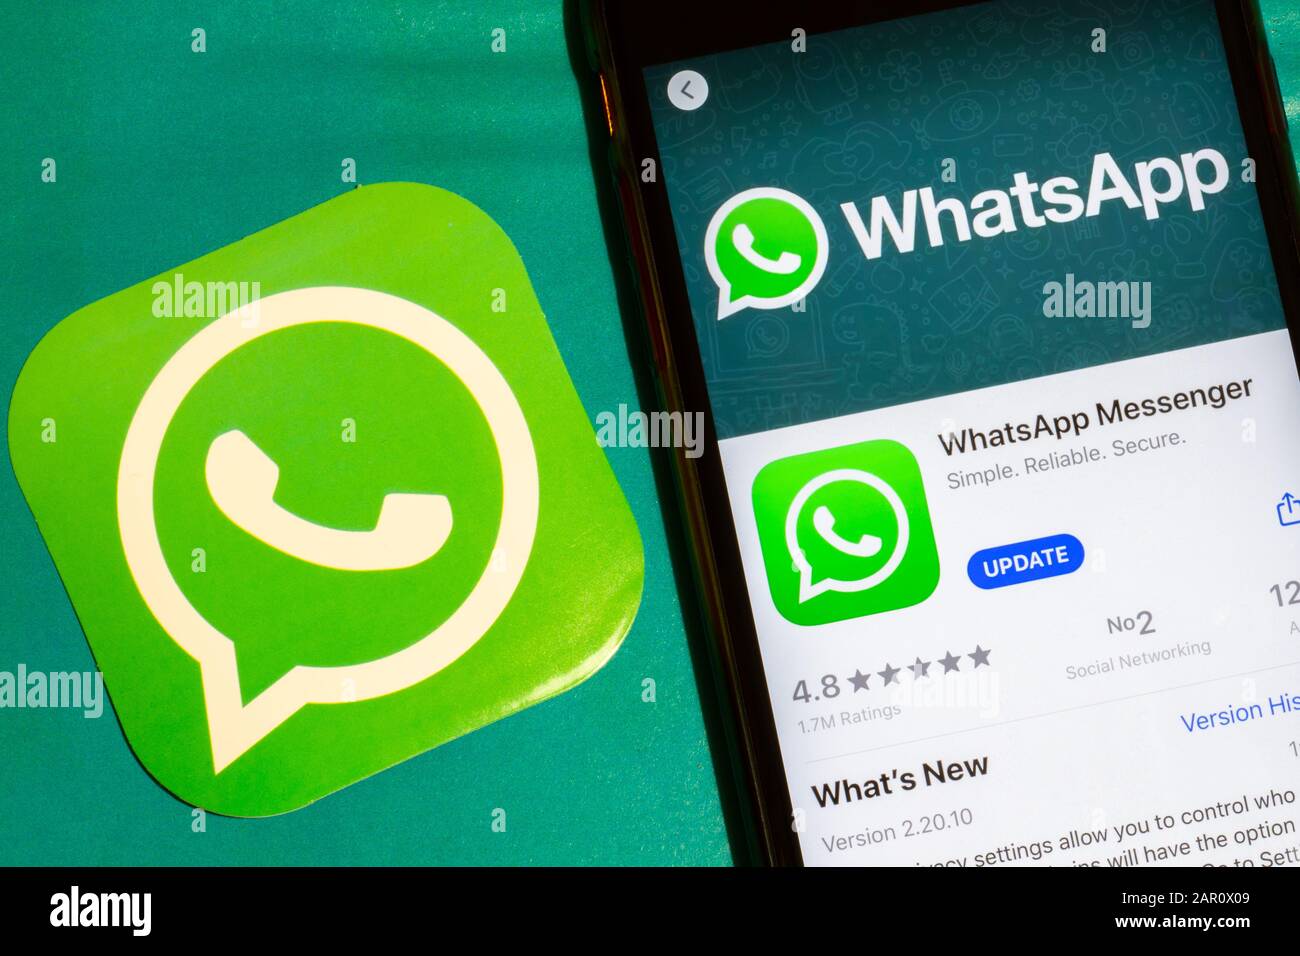 Los Angeles, Californie, États-Unis - 22 janvier 2020: WhatsApp app logo et téléphone avec icône gros plan sur fond vert, éditorial illustratif Banque D'Images